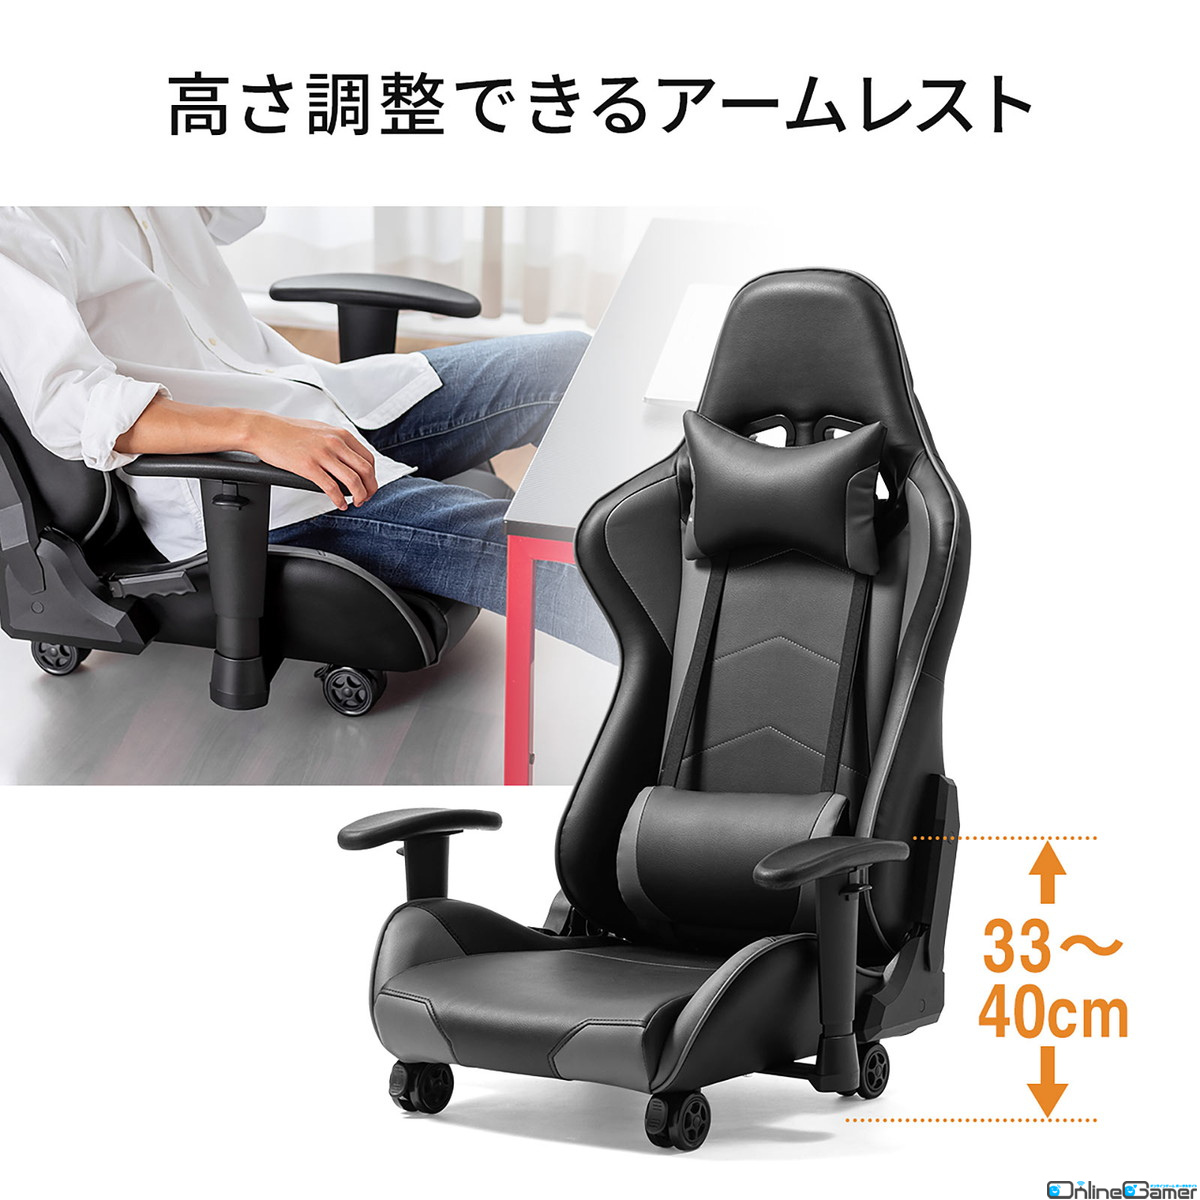 からだ全体を預けられるバケットシート形状のキャスター付きゲーミング座椅子が発売！カラーはレッドとグレーの2種の画像